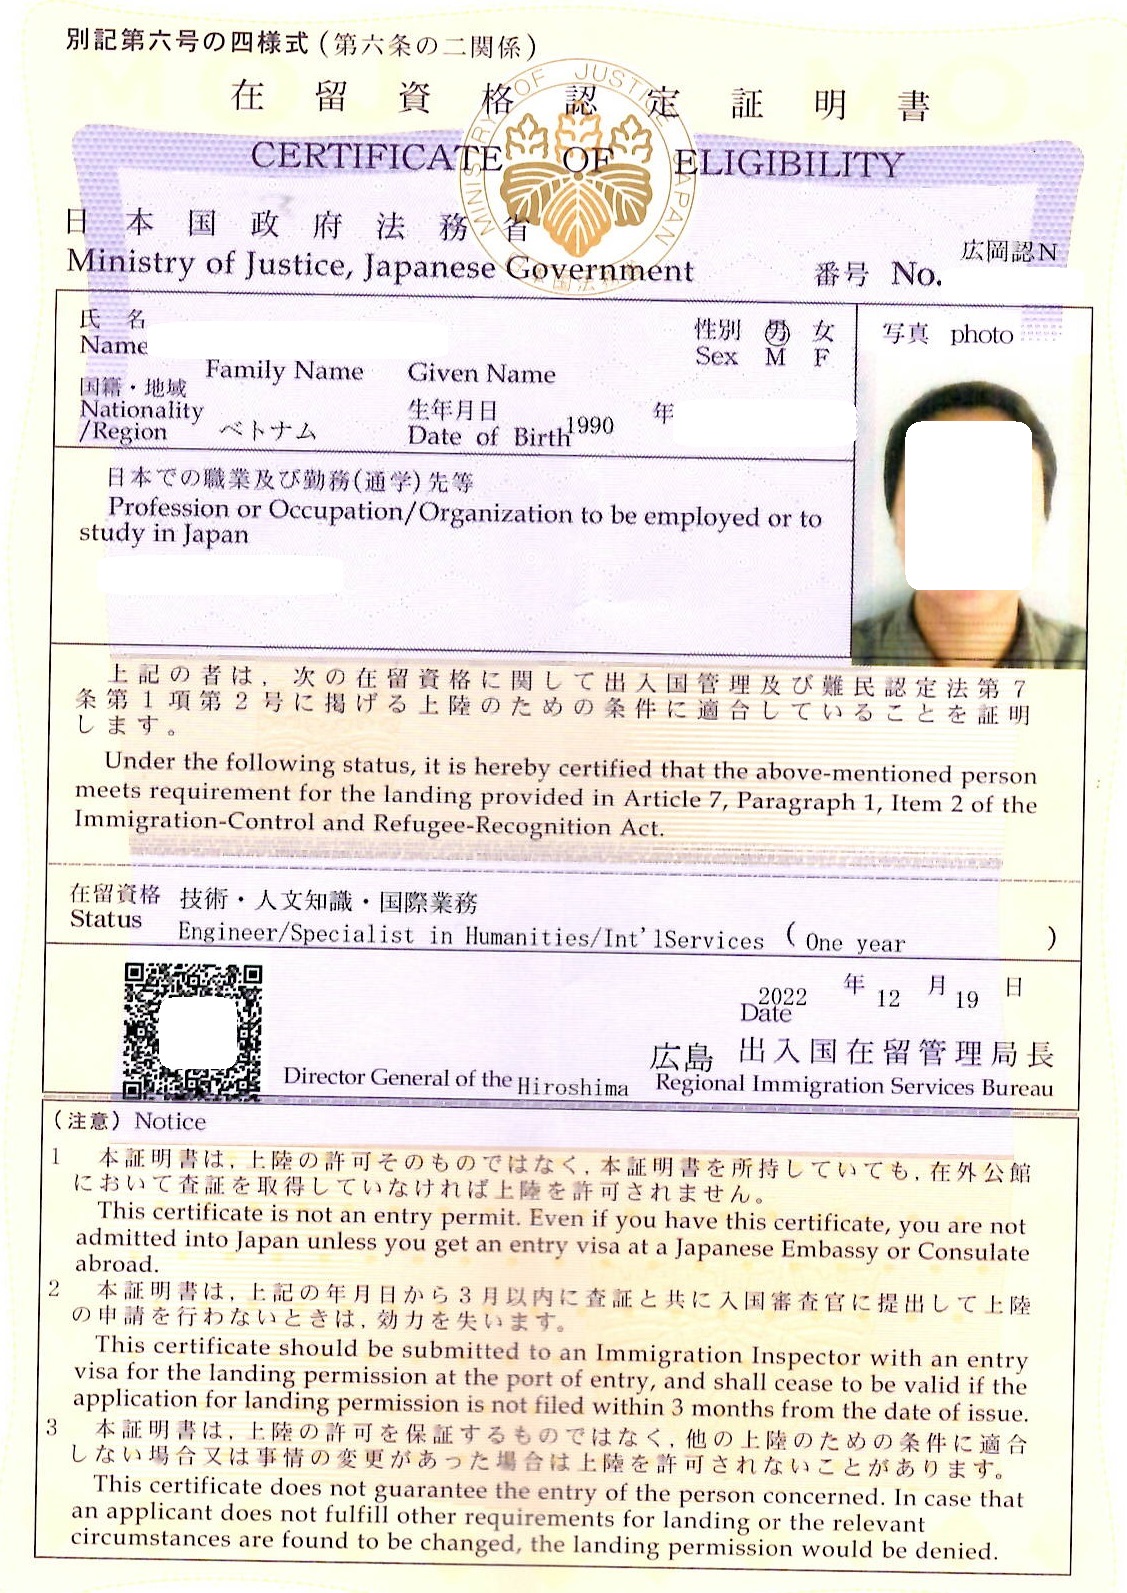 ベトナム人「技術・人文知識・国際業務」での在留資格認定証明書1年を取得　